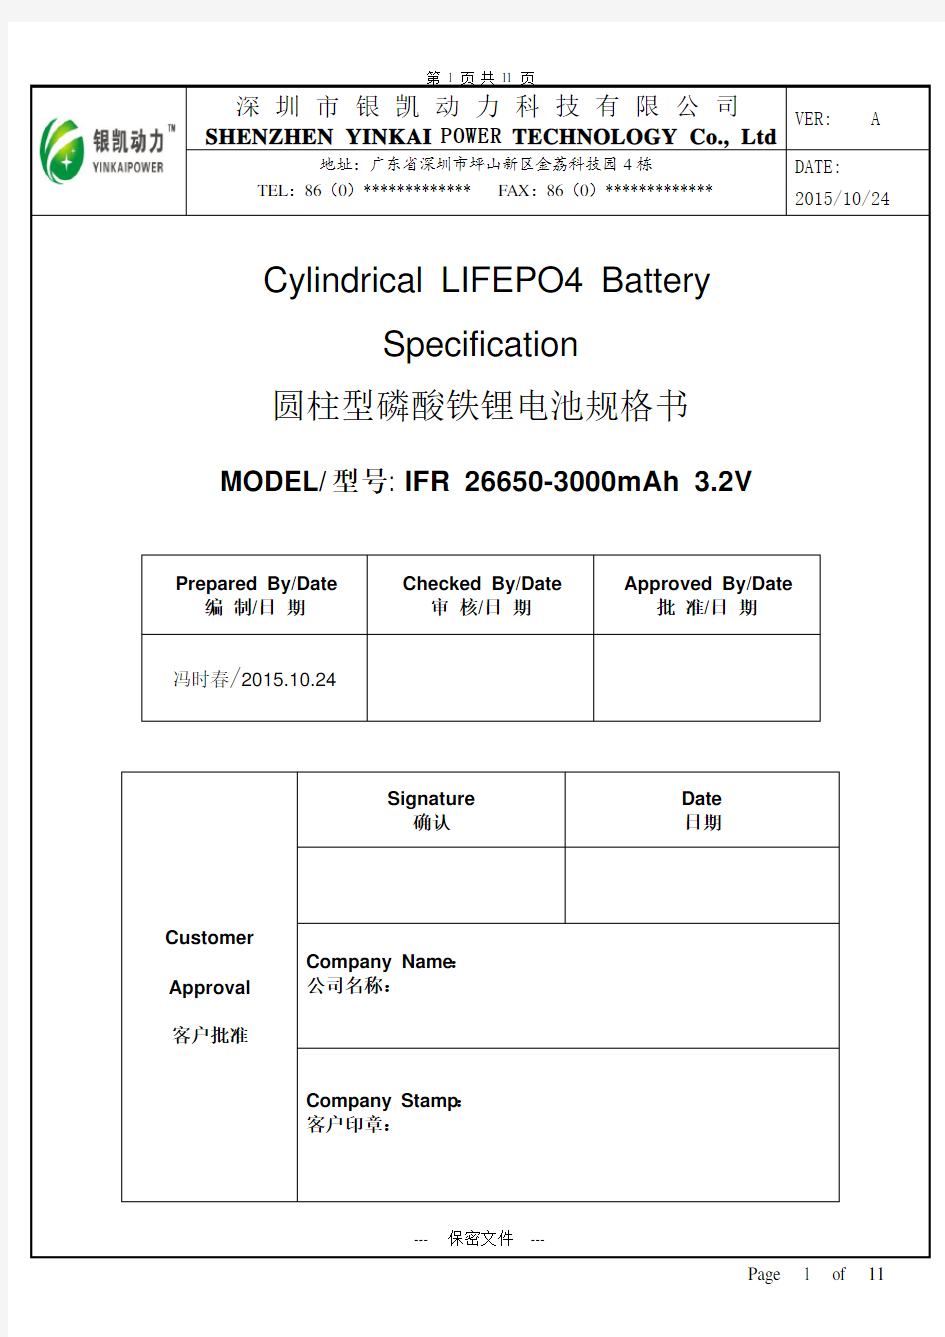 IFR 26650-3000mAh-3.2V -磷酸铁锂电池规格书超详细版